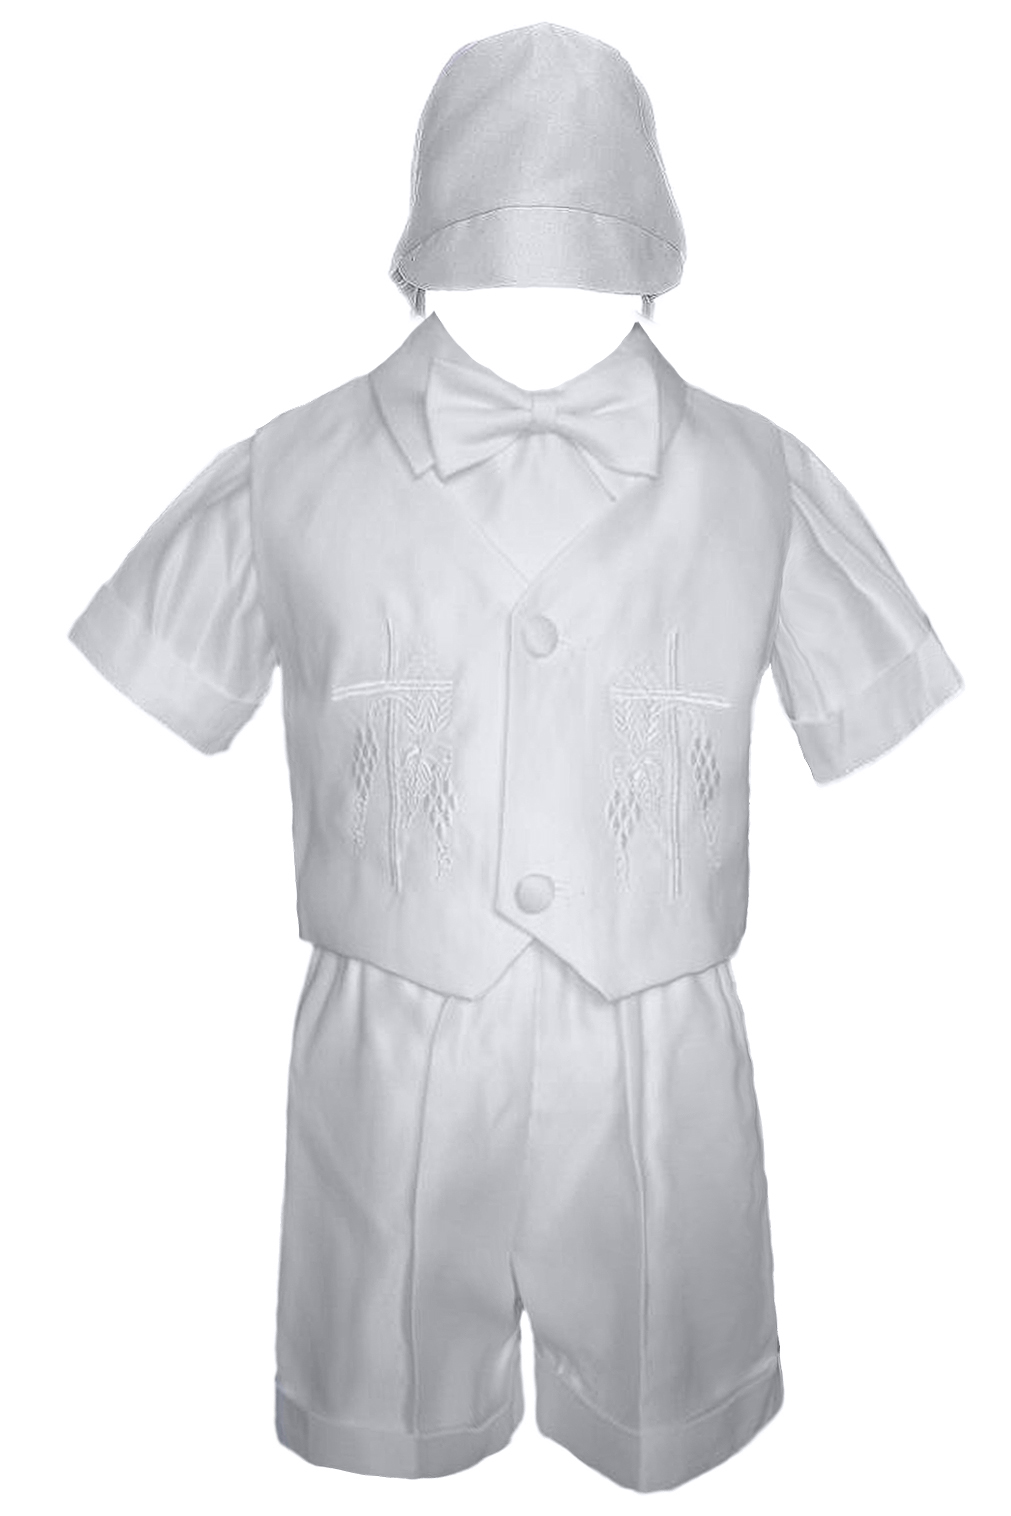 Infant Toddler Boys Baptism Short Sleeve Christening Vest Tuxedo Suit ...